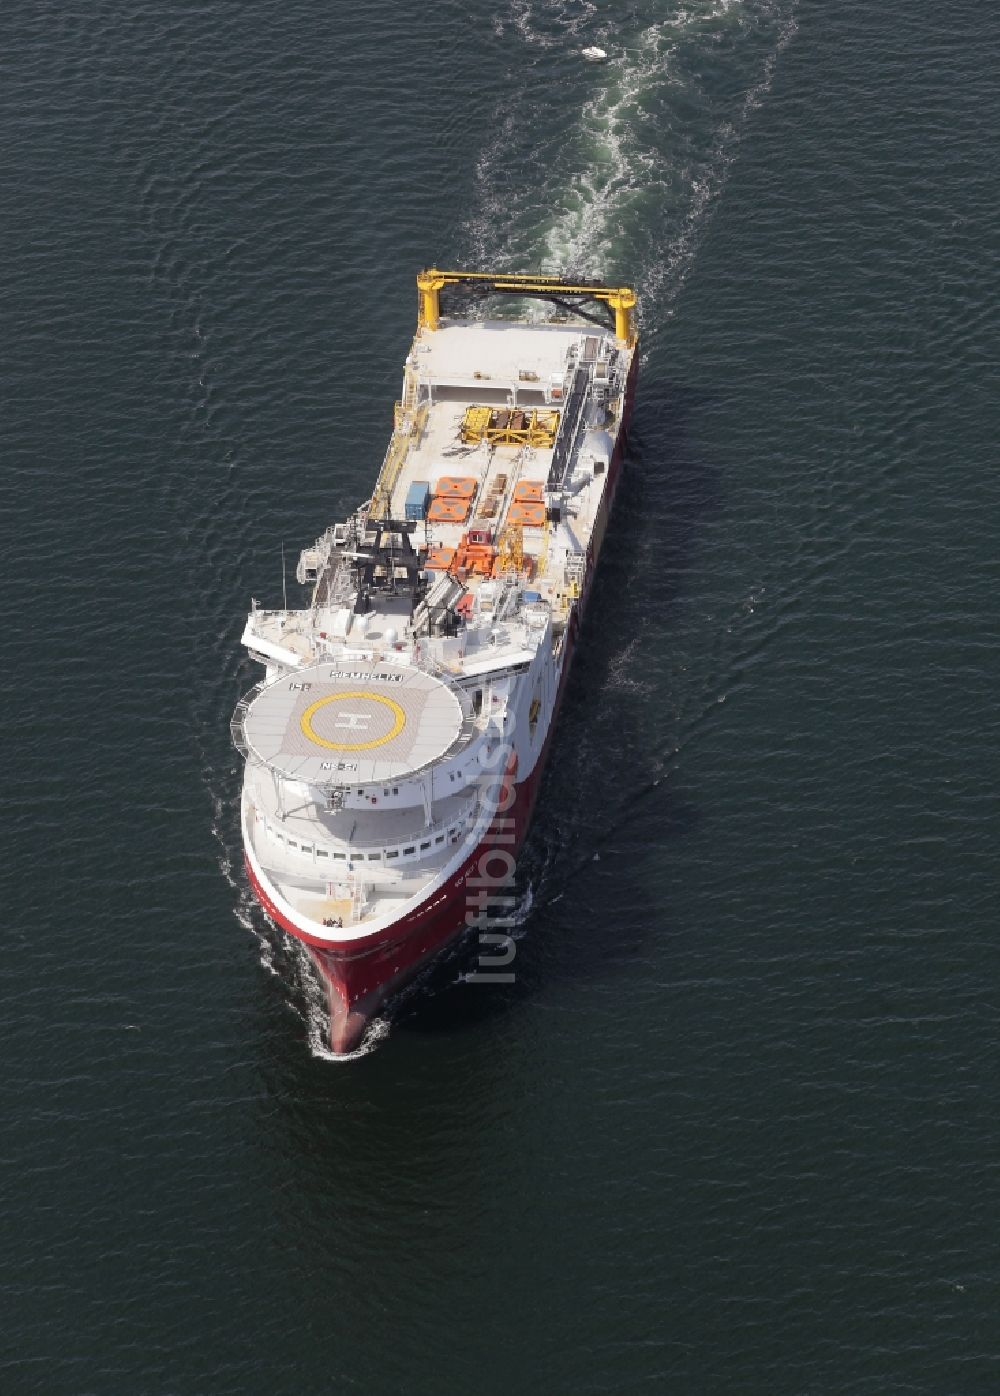 Broager aus der Vogelperspektive: Schiff - Spezialschiff für Ölquellen -Erkundung in Fahrt auf der Flensburger Förde in Broager in Syddanmark, Dänemark